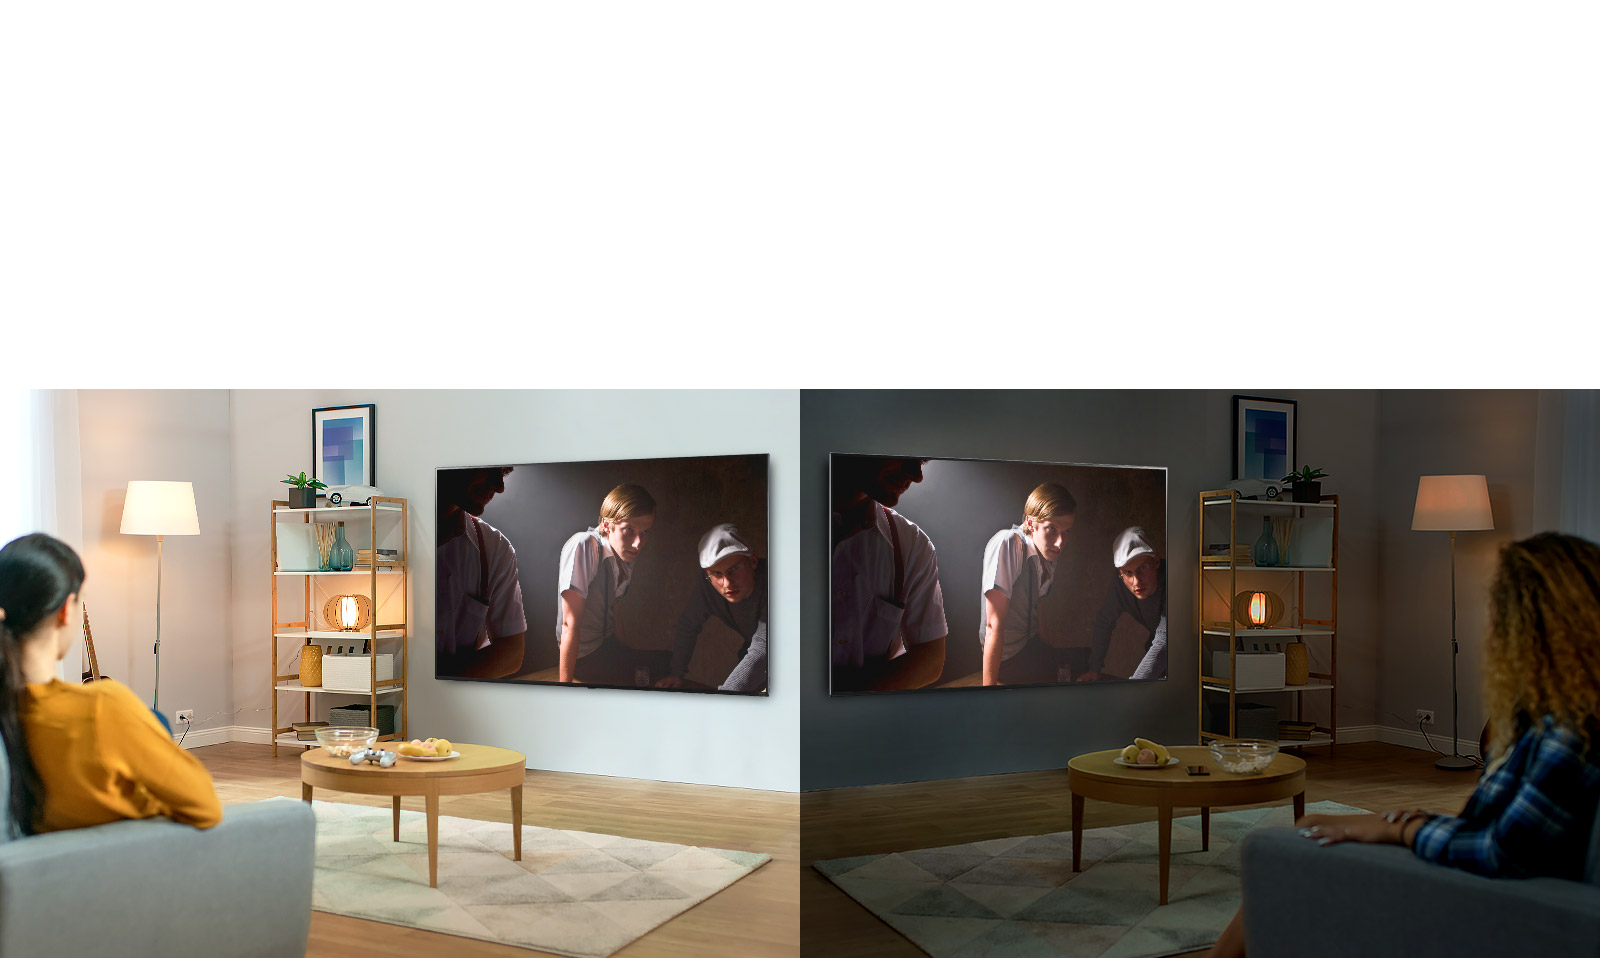 Deux femmes regardent la même scène sur un téléviseur dans des salons comparés avec différentes conditions de luminosité